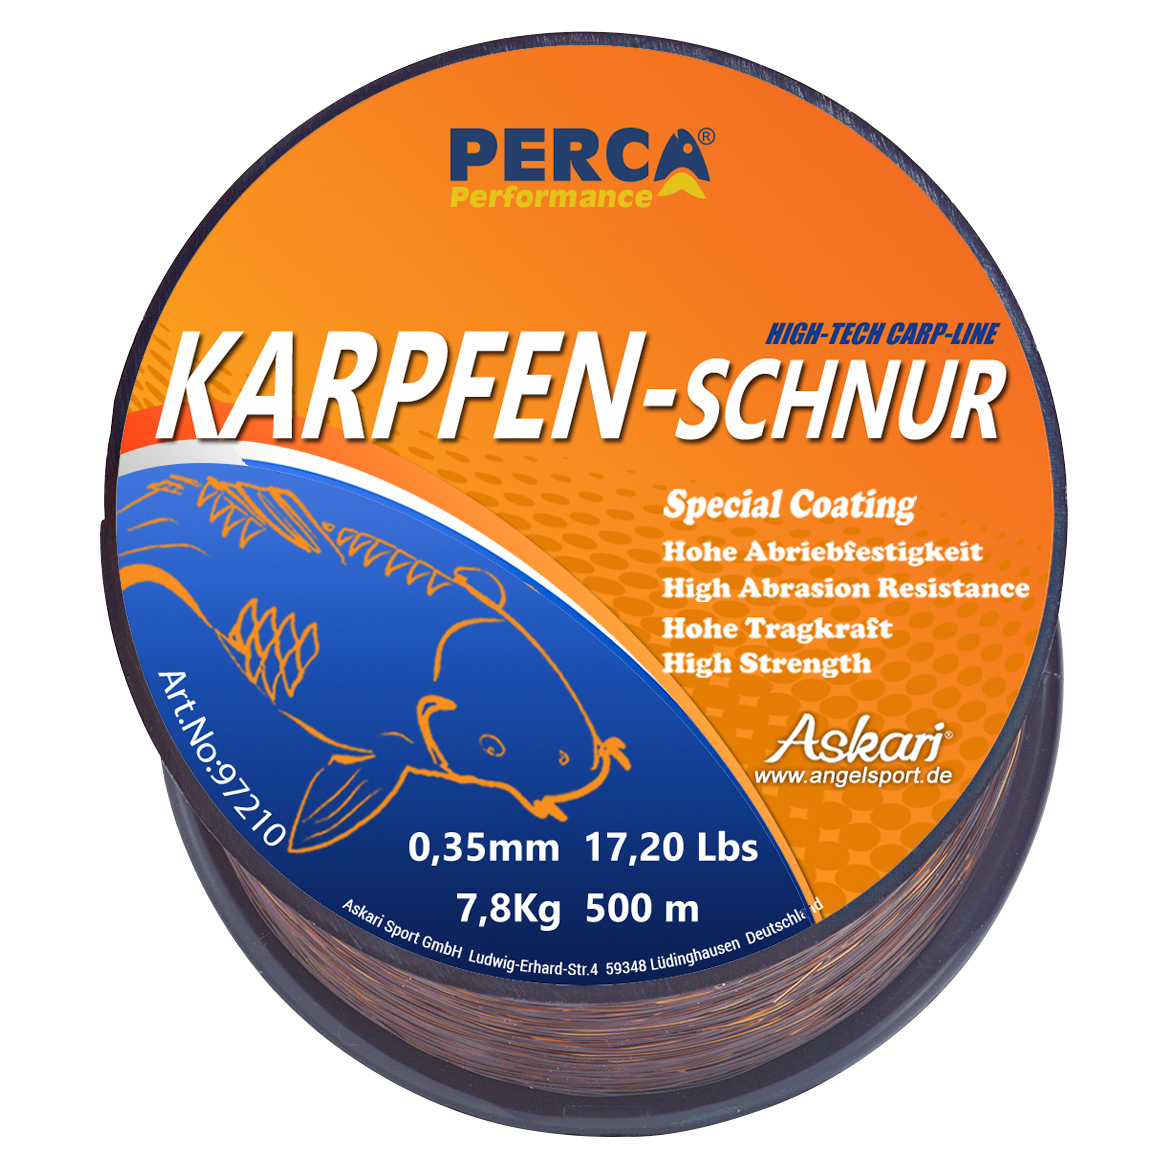 Perca Performance Karpfenschnur Performance (braun) 